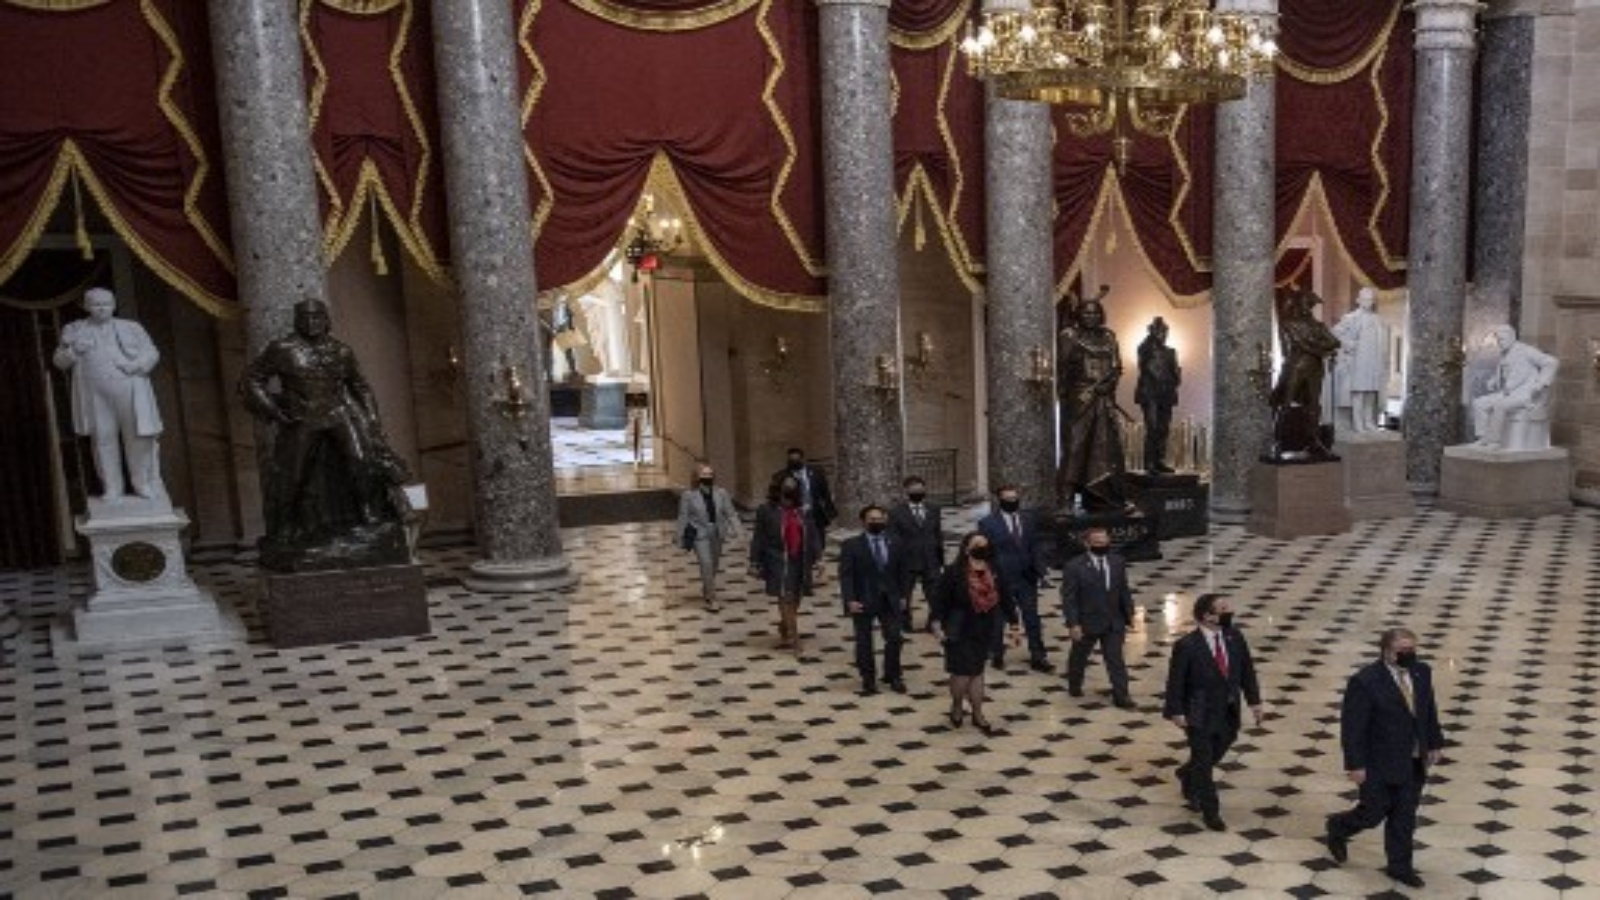  أعضاء لجنة المساءلة في مجلس النواب يسيرون إلى قاعة مجلس الشيوخ عند وصولهم لبدء محاكمة الرئيس الأمريكي السابق دونالد ترمب في مبنى الكابيتول هيل في 9 فبراير 2021 ، في واشنطن العاصمة.